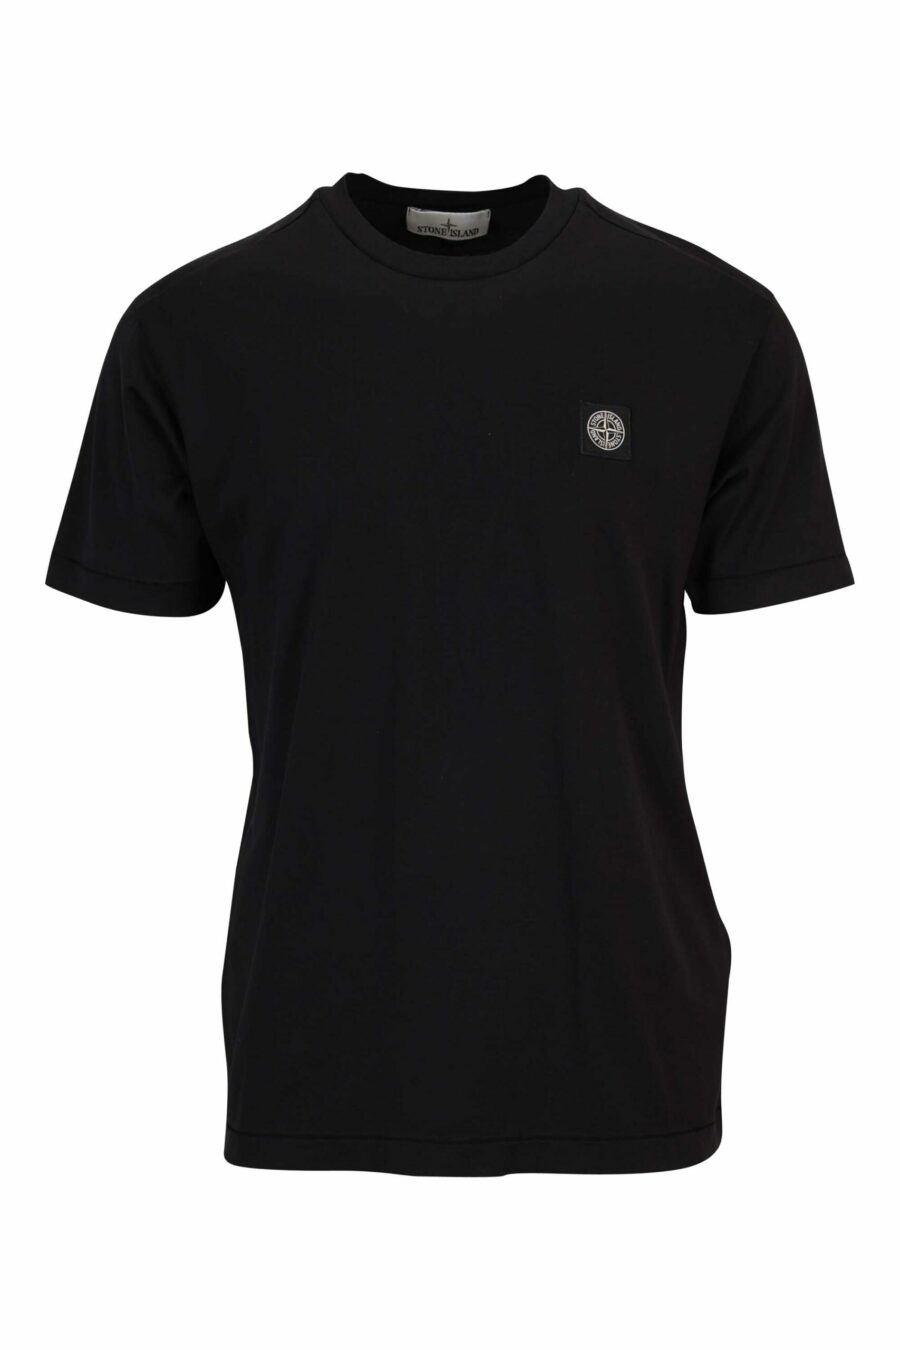 Schwarzes T-Shirt mit Mini-Logo-Kompass-Aufnäher - 8052572851964 skaliert